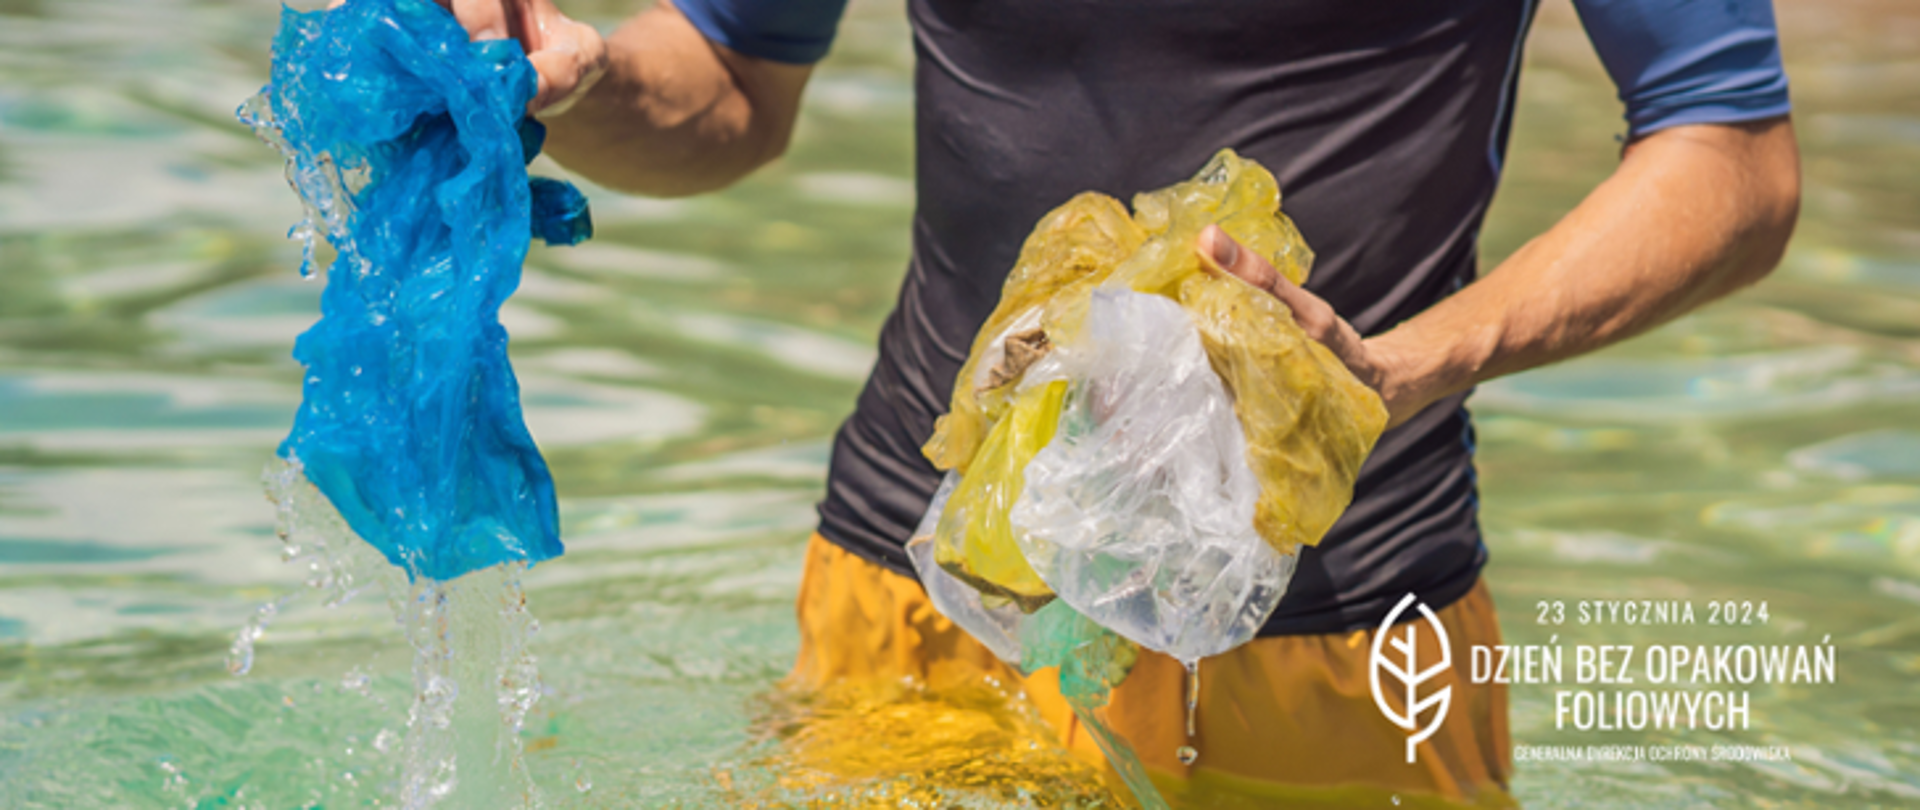 Mężczyzna w sportowym stroju stoi po biodra w wodzie,. W rękach trzyma ociekające wodą foliowe woreczki, które wyjął z wody.